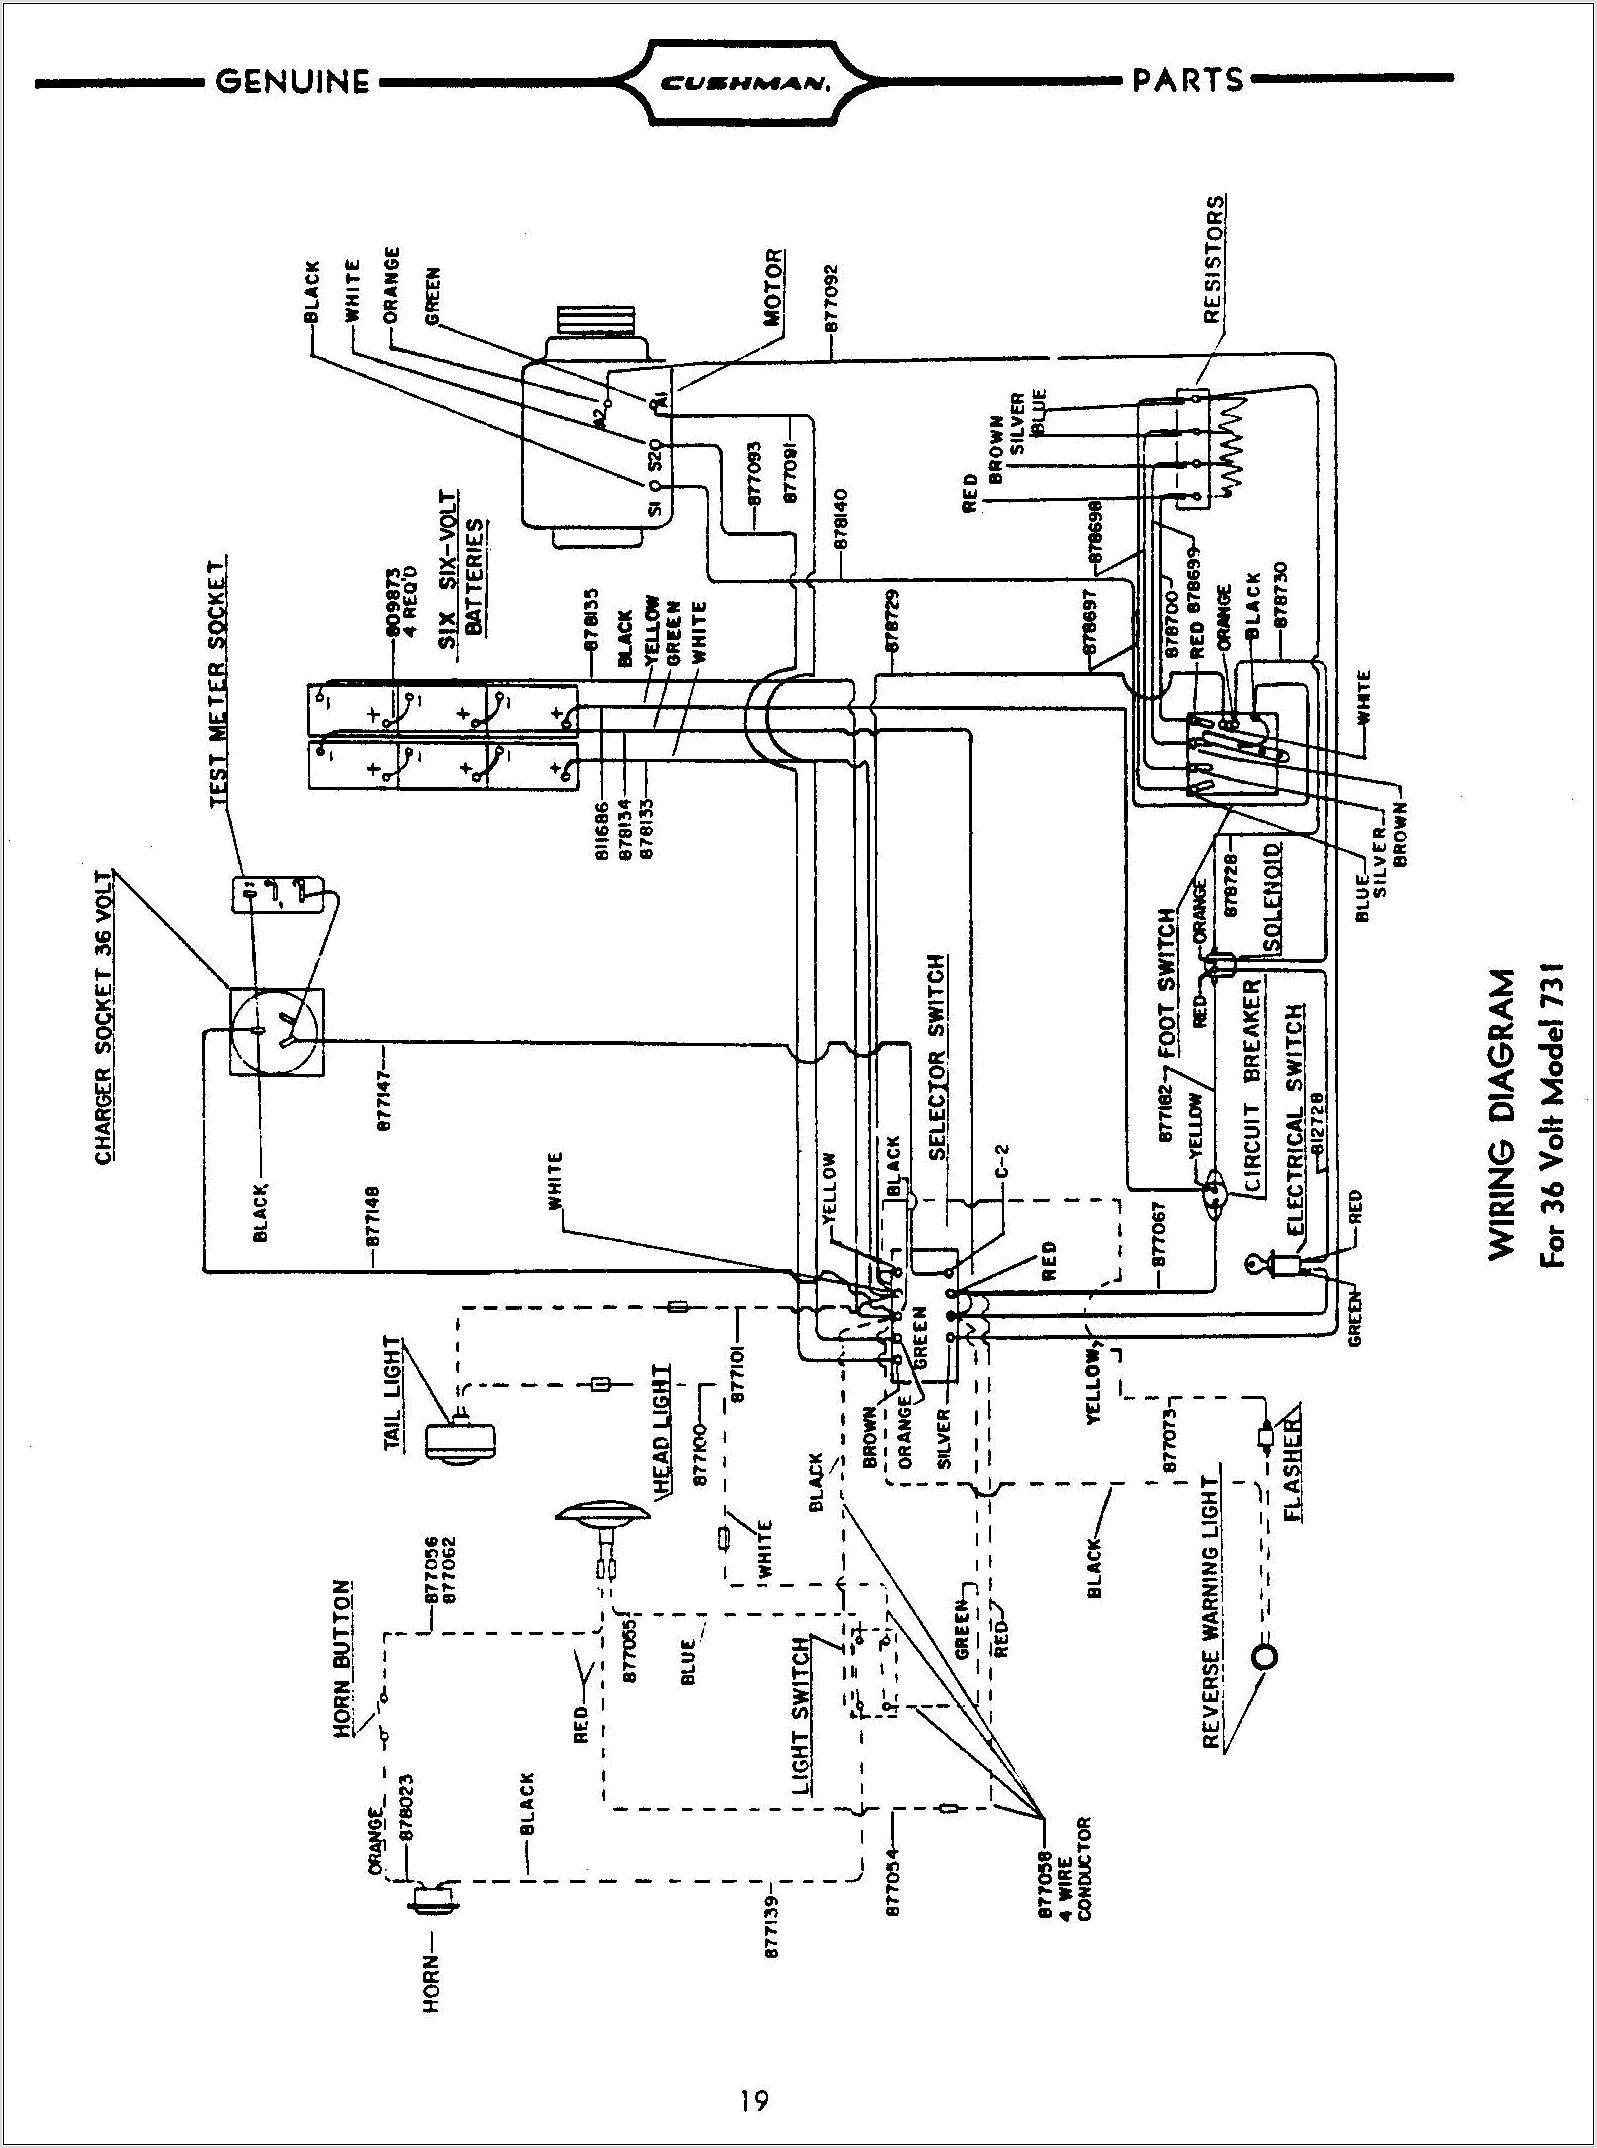 2006 Club Car Precedent Wiring Diagram